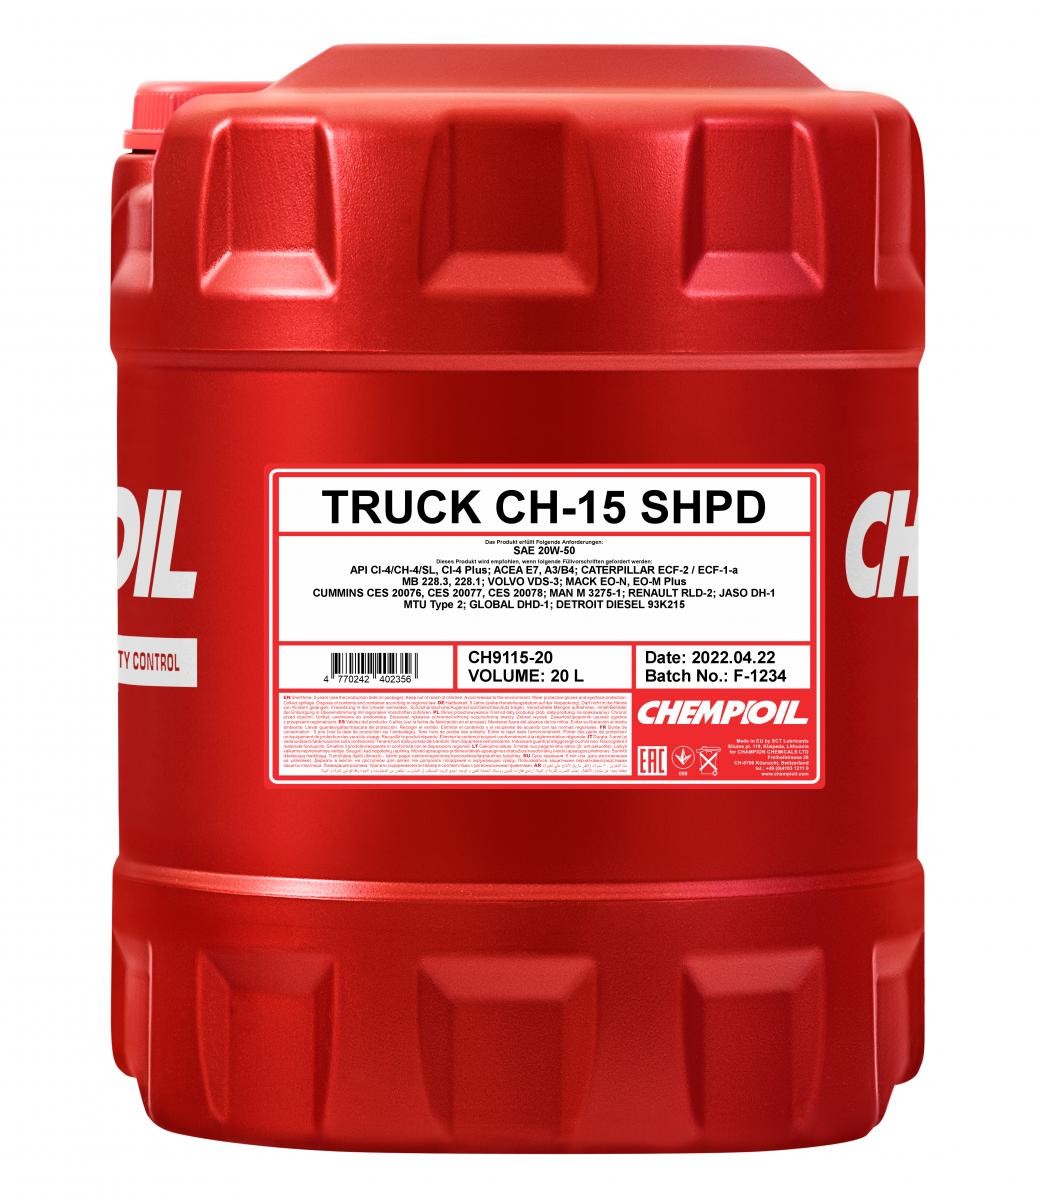 Kaufen Sie Auto Motoröl CHEMPIOIL CH9115-20 Truck, SHPD CH-15 20W-50, 20l